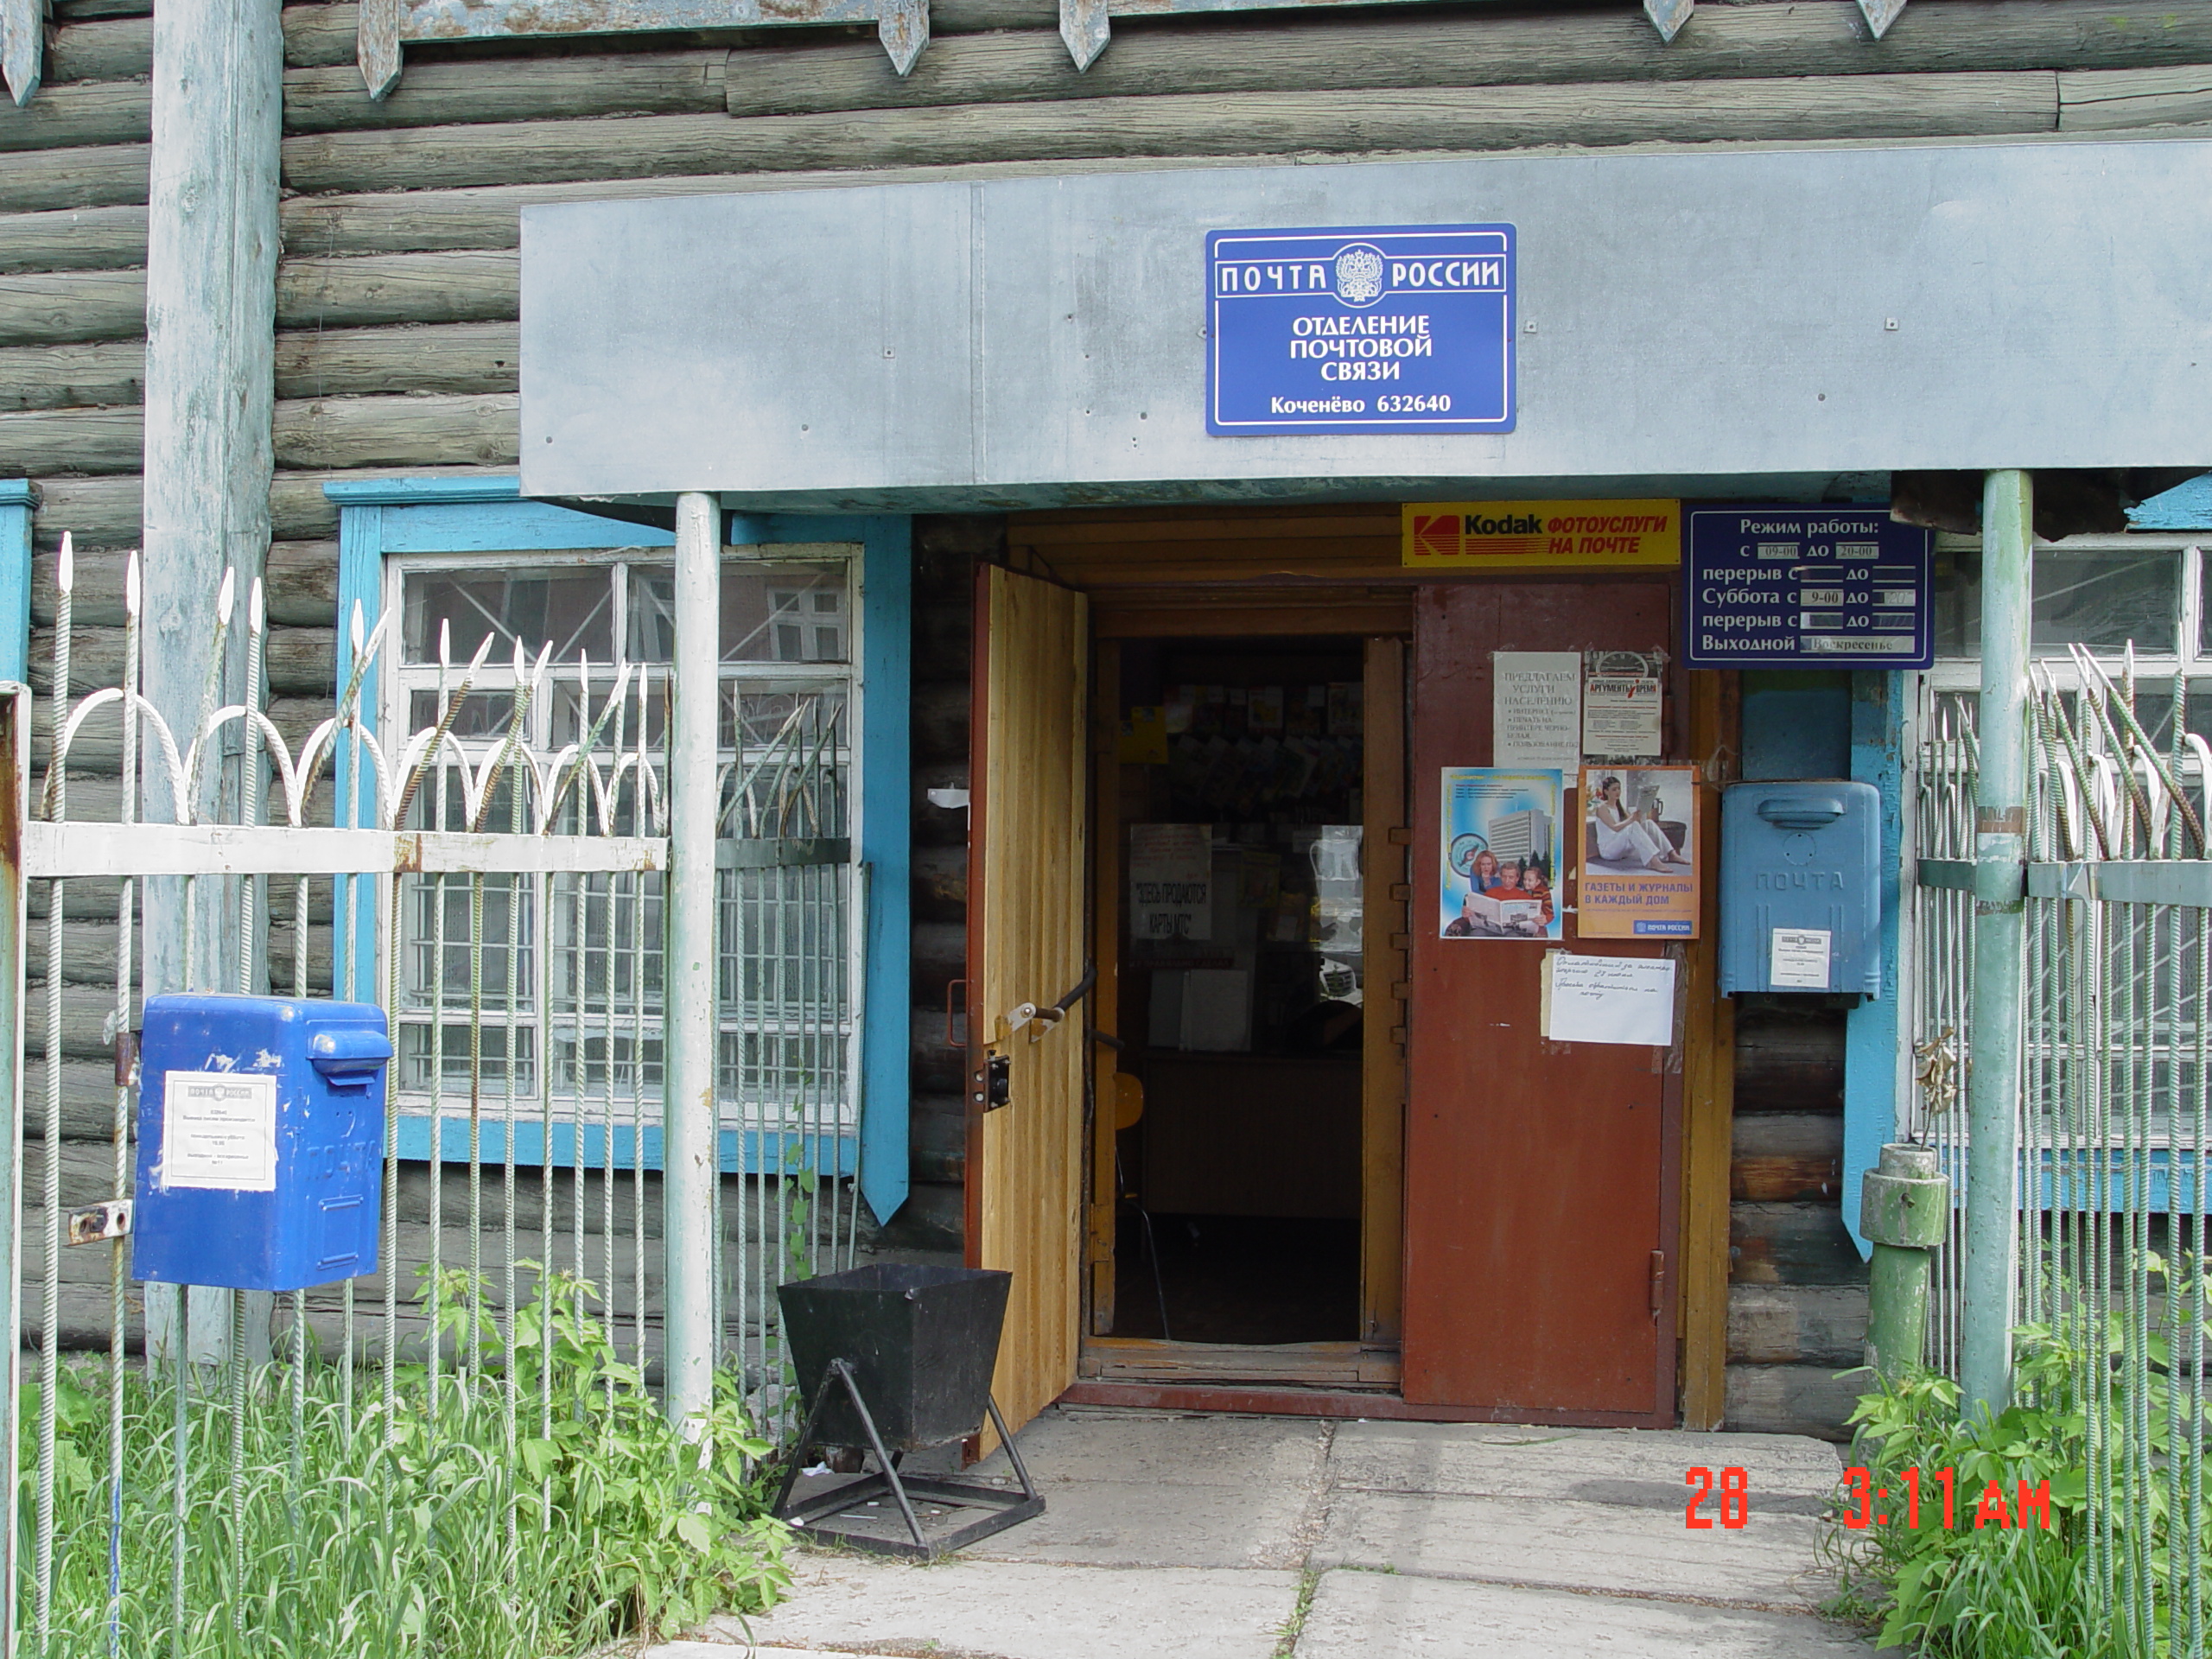 ФАСАД, отделение почтовой связи 632640, Новосибирская обл., Коченевский р-он, Коченево